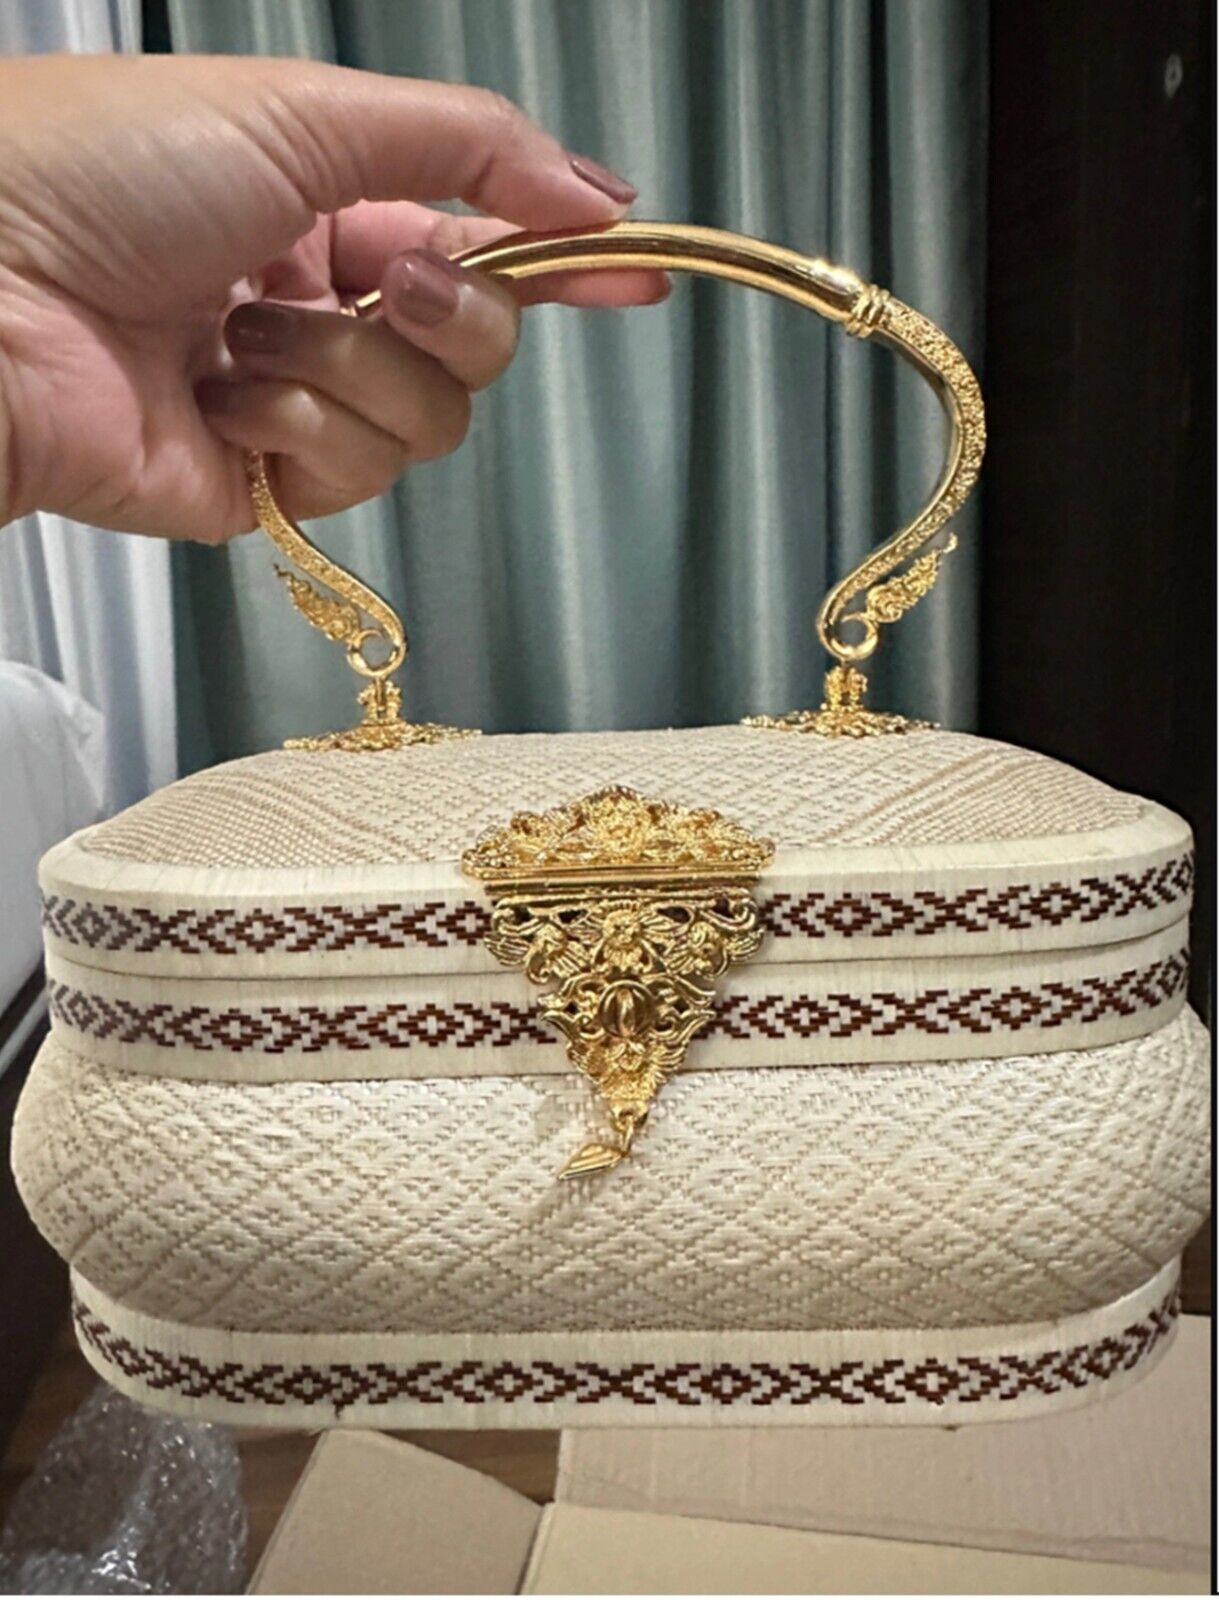 Yanlipao Hand Bag Thai Handmade Ivory Traditional Premium Handicraft Luxury Gift